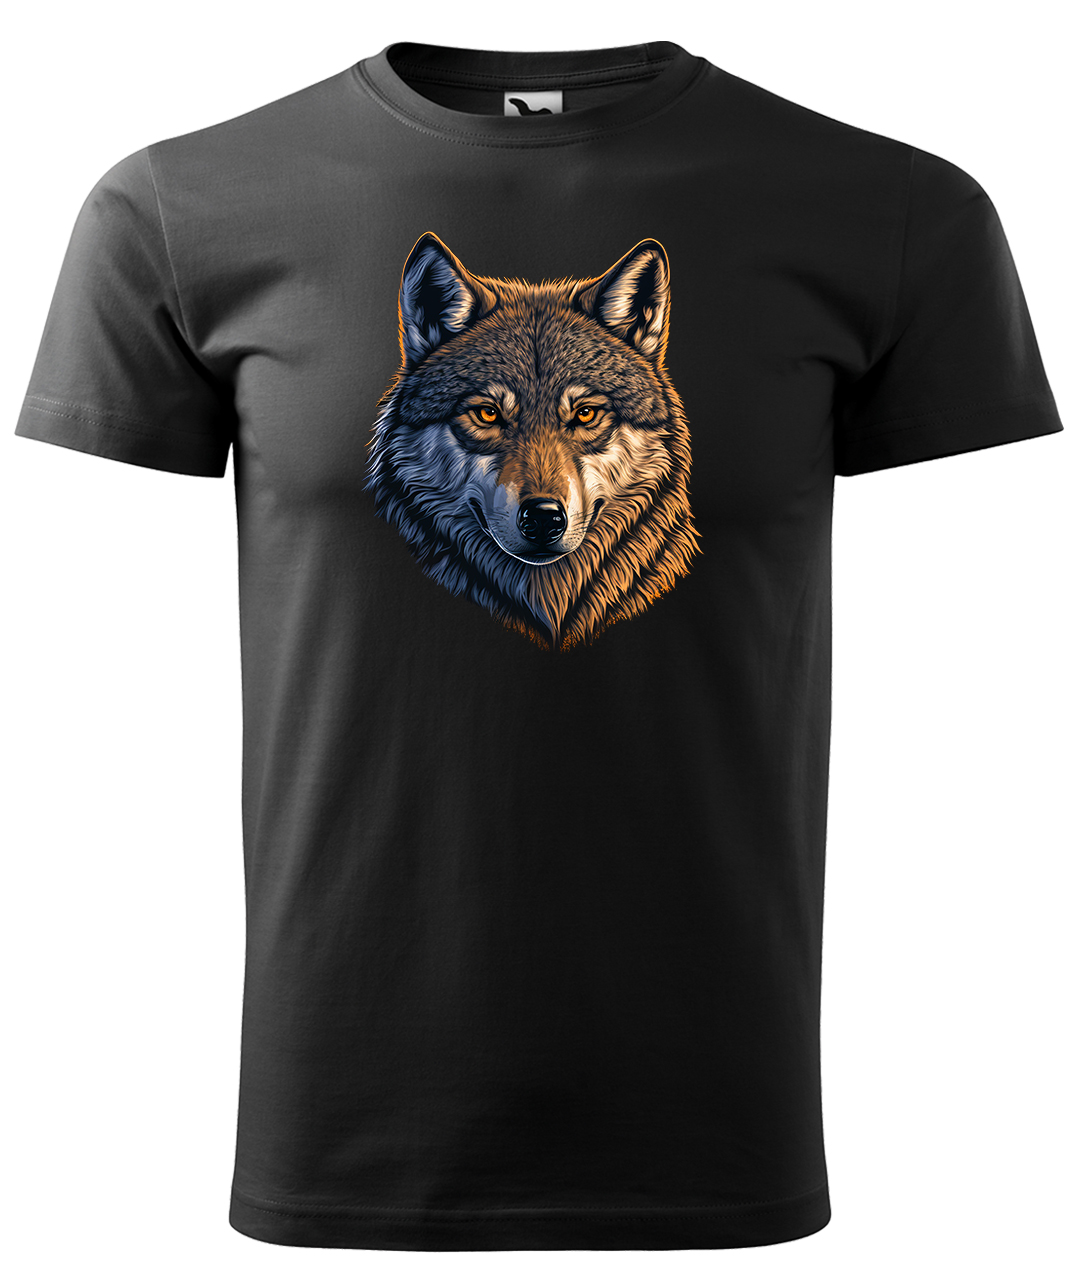 Dětské tričko s vlkem - Hlava vlka Velikost: 10 let / 146 cm, Barva: Černá (01), Délka rukávu: Krátký rukáv